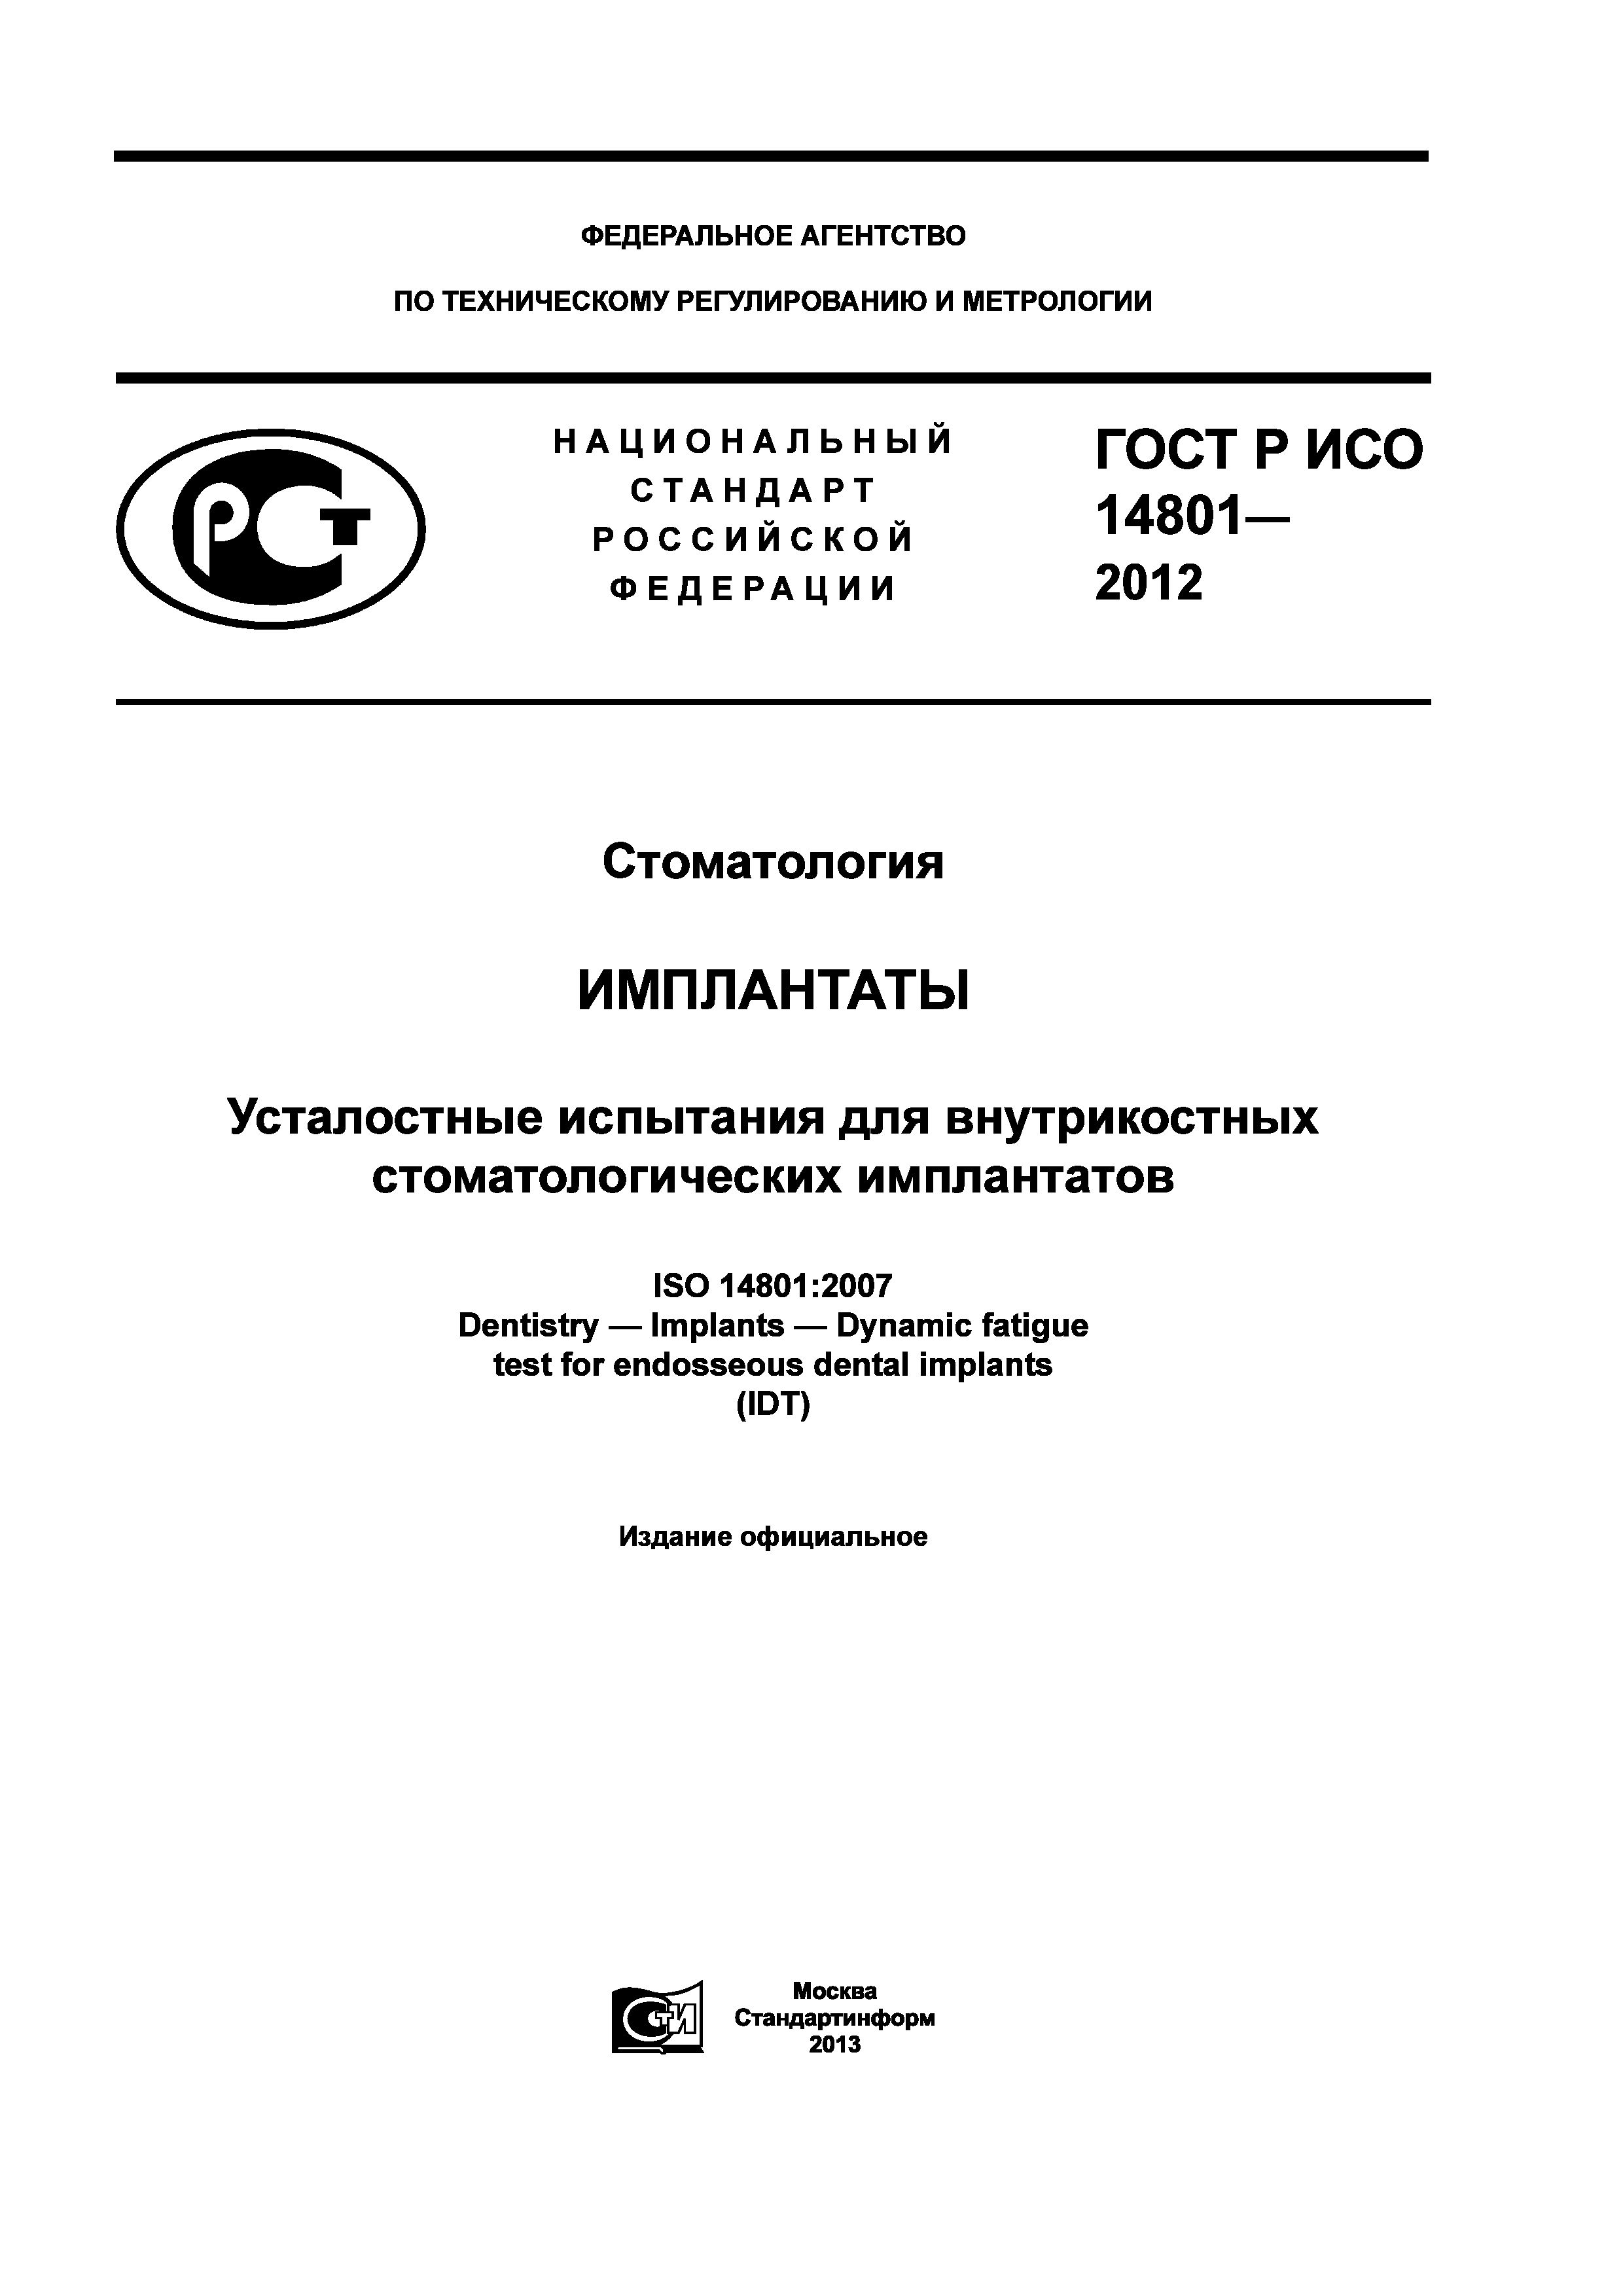 ГОСТ Р ИСО 14801-2012